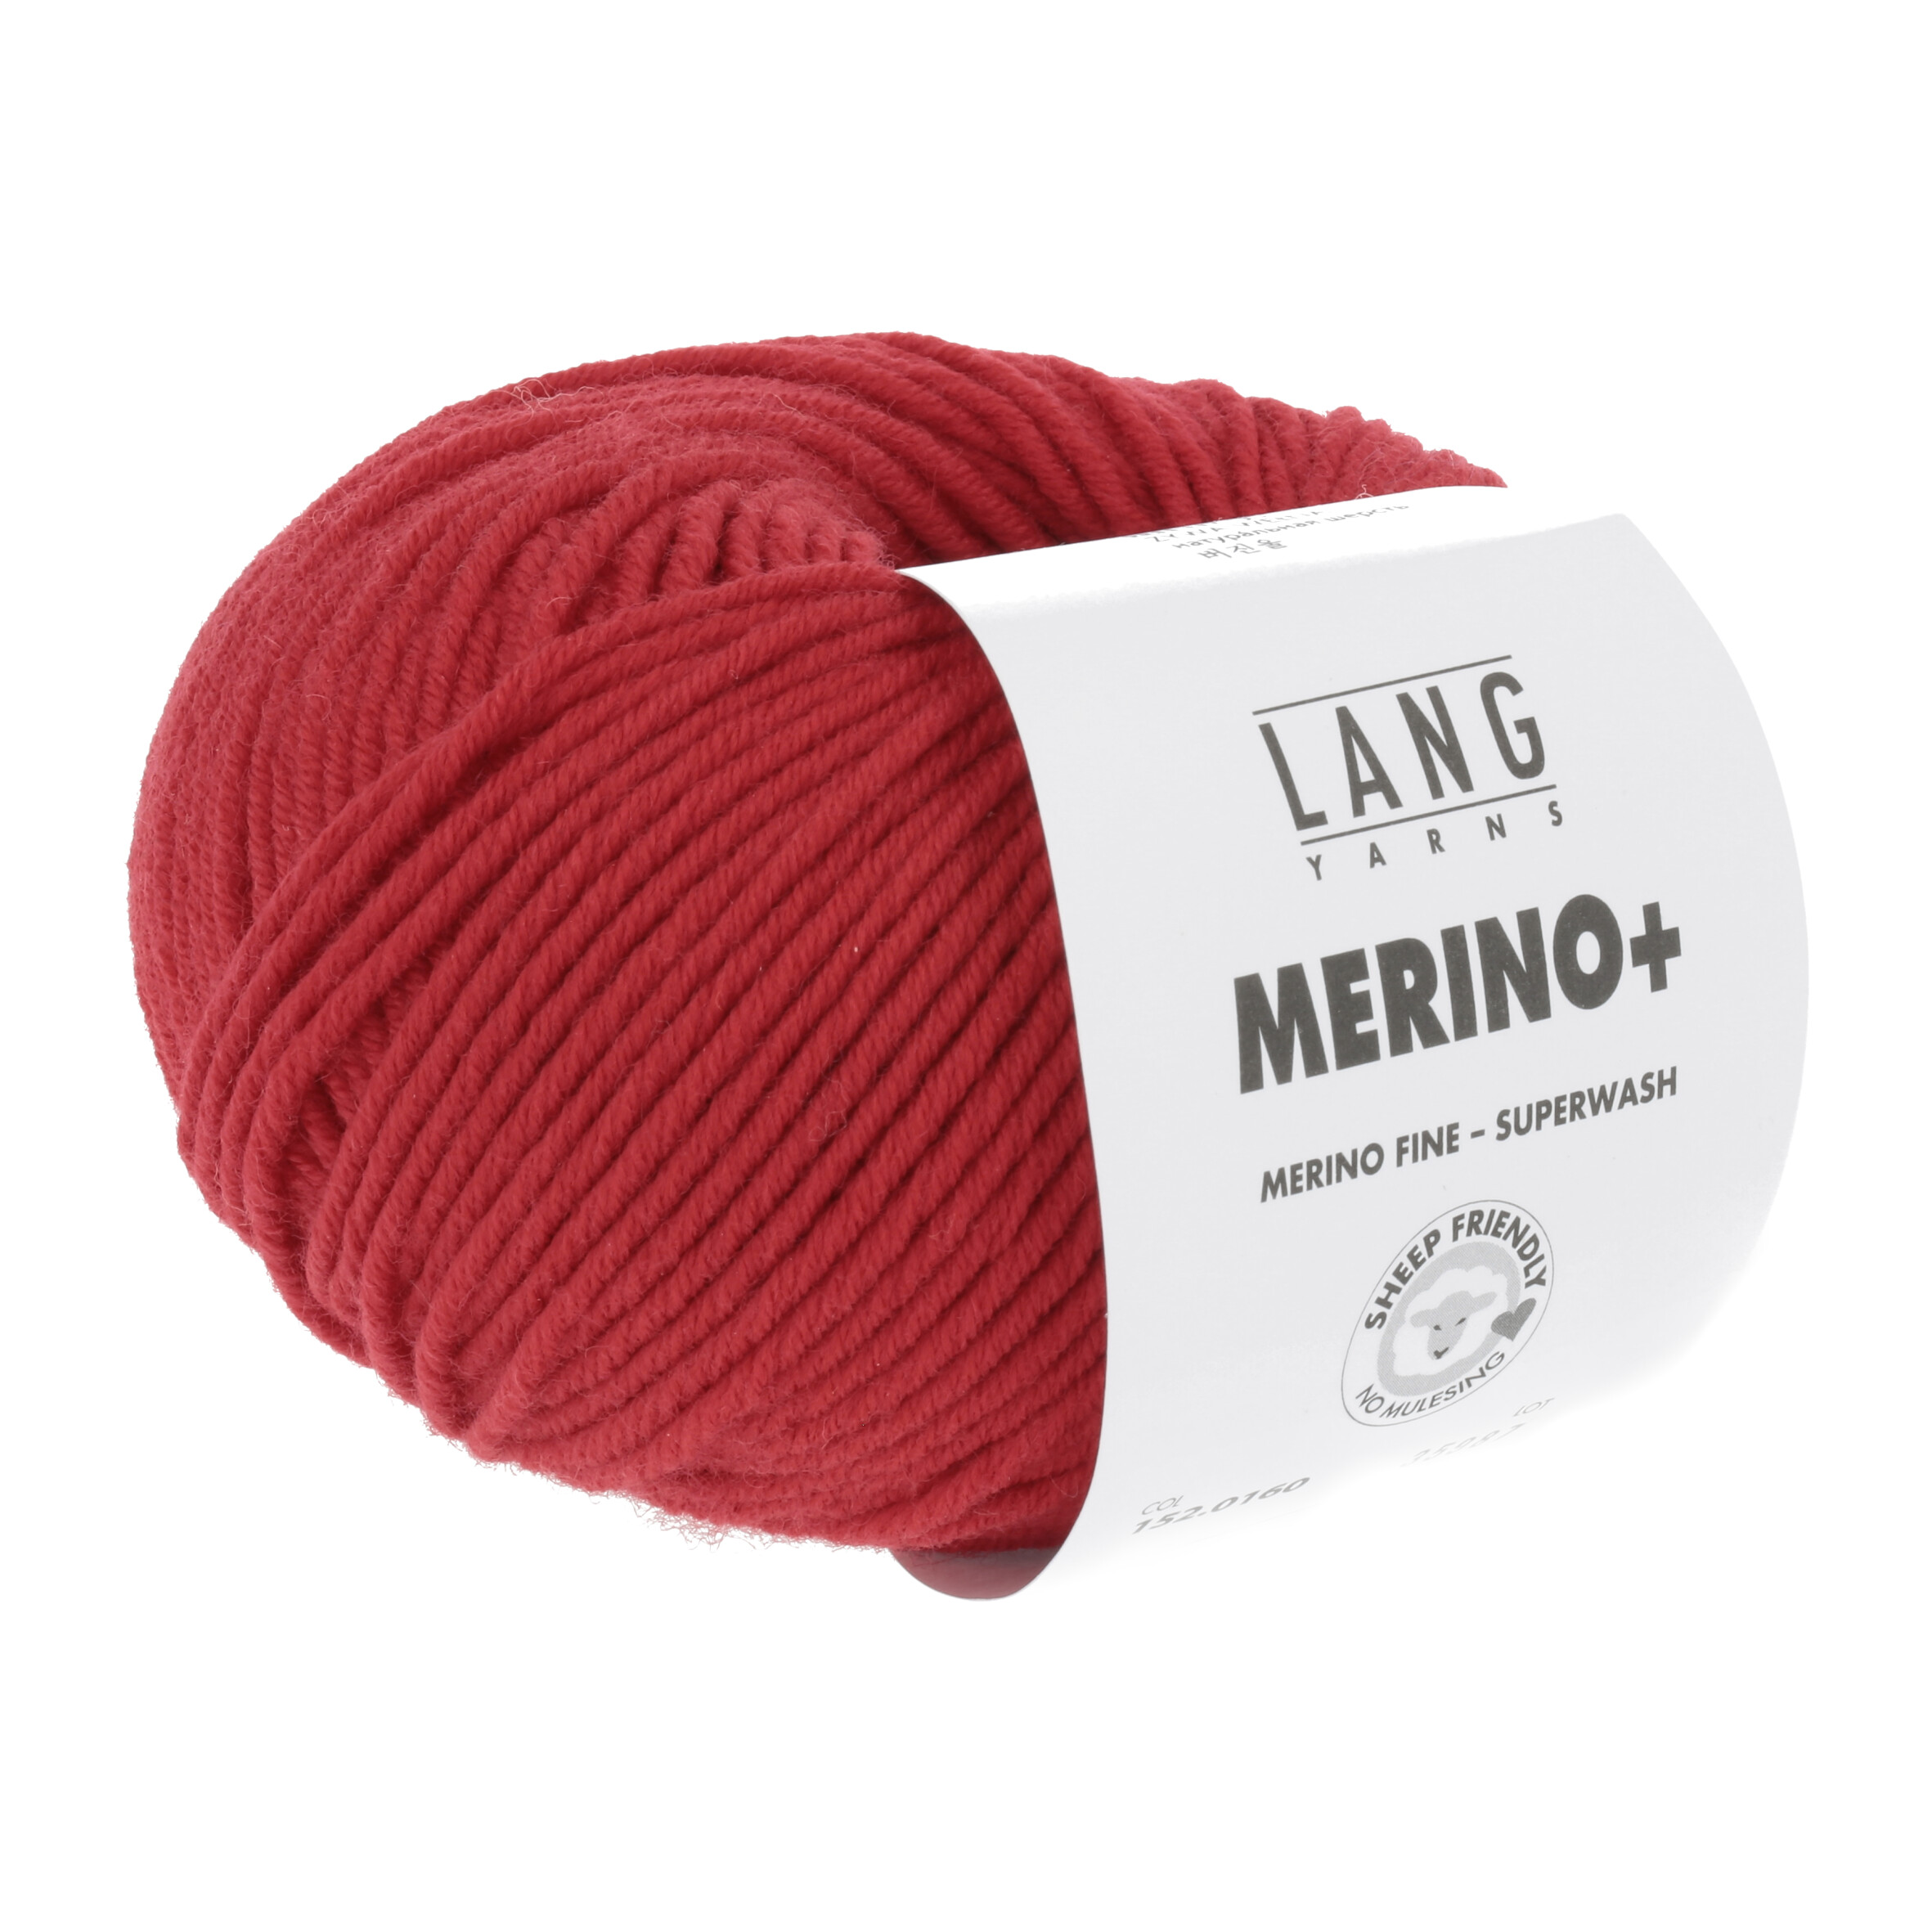 LANG MERINO + 50GR 0160 ROT